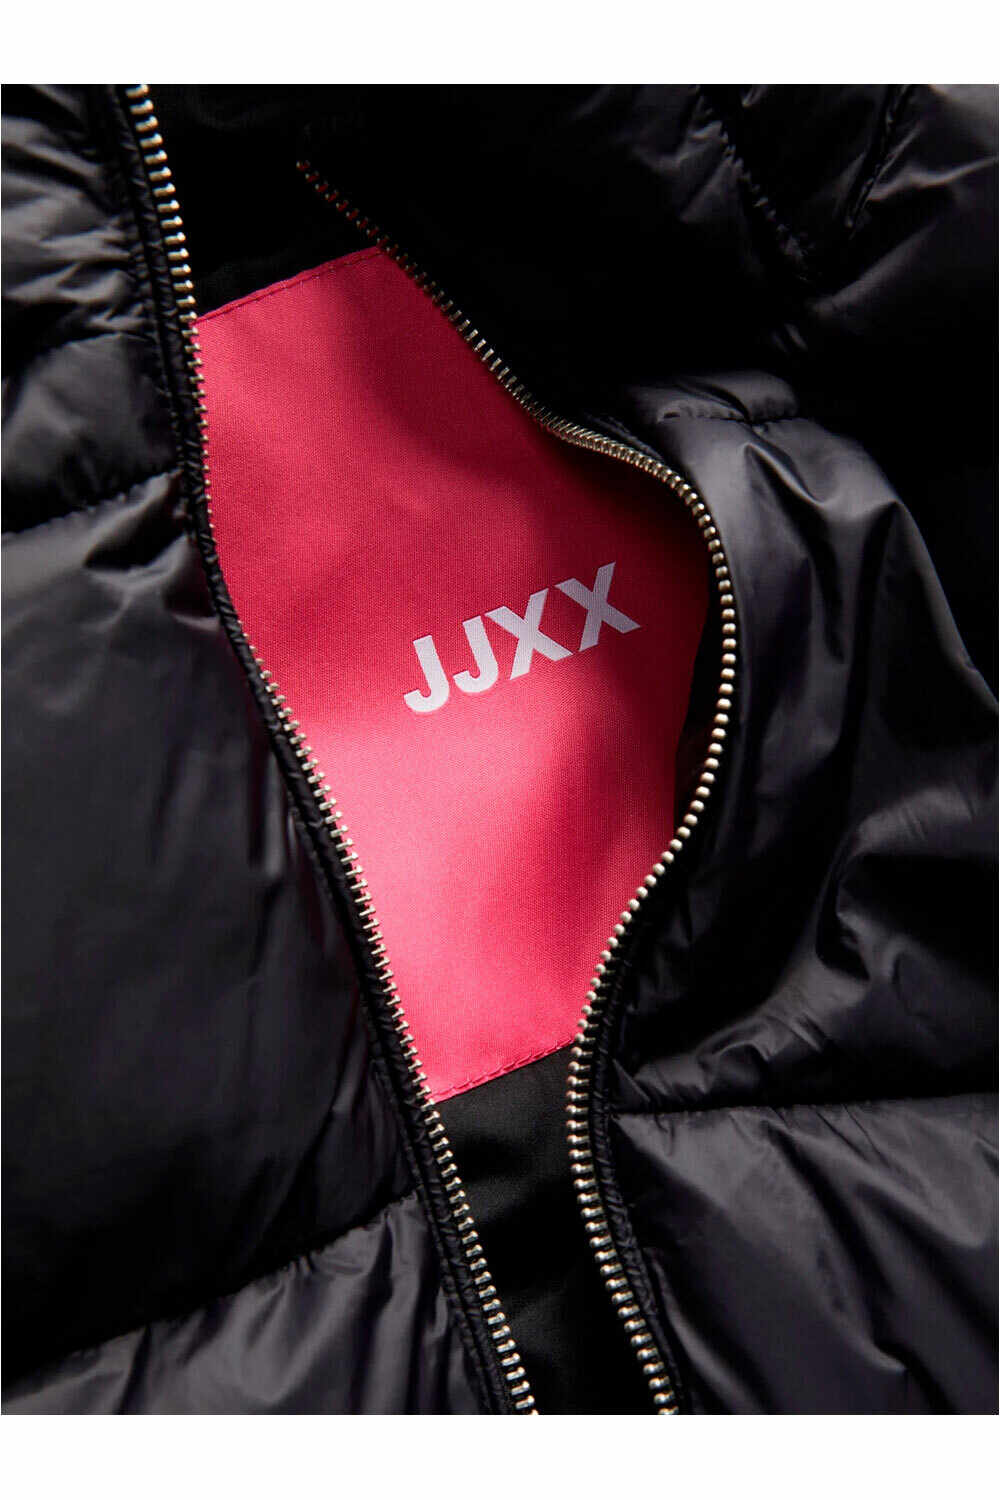 J&J chaquetas mujer JXBILLIE PUFFER JACKET OTW SN 04